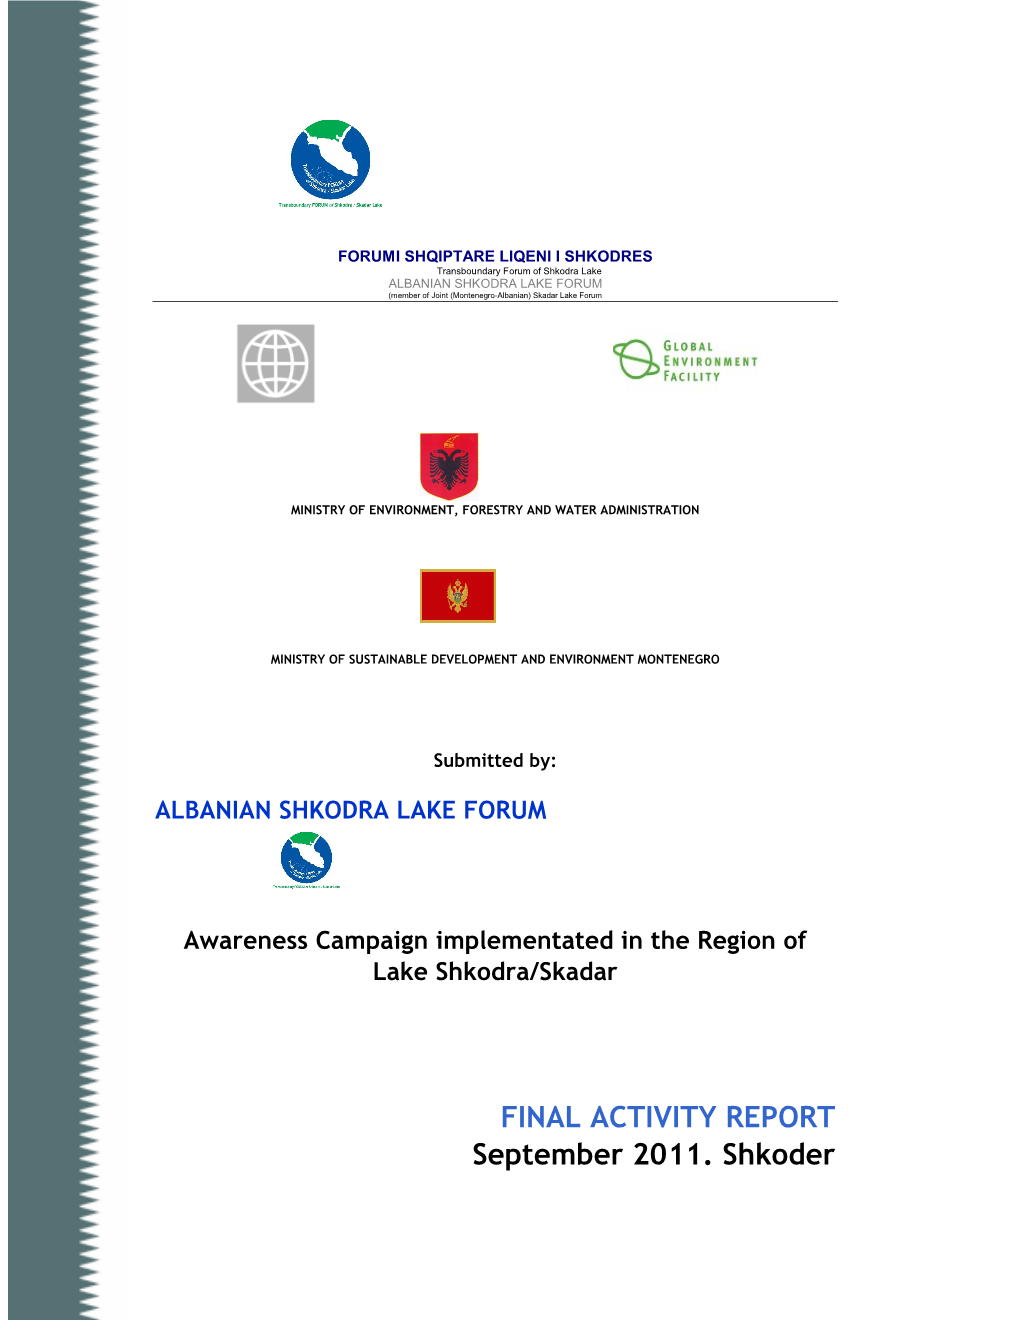 FINAL ACTIVITY REPORT September 2011. Shkoder Transboundary SHKODRA/Skadar LAKE FORUM